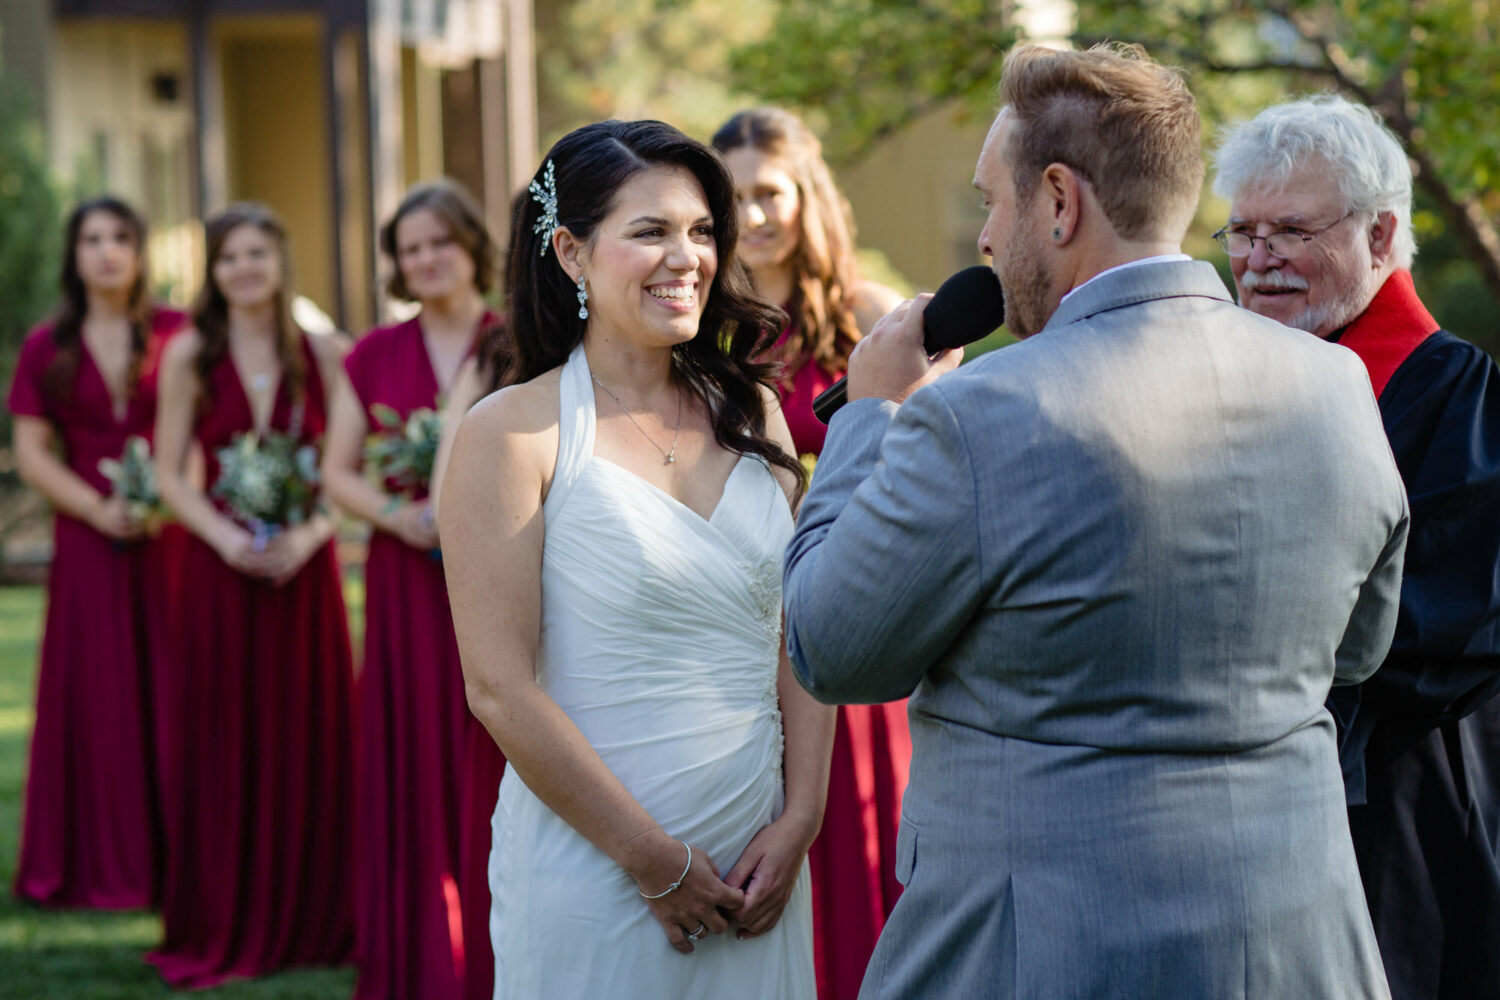 Exchanging vows at a Hyatt Lake Tahoe wedding.